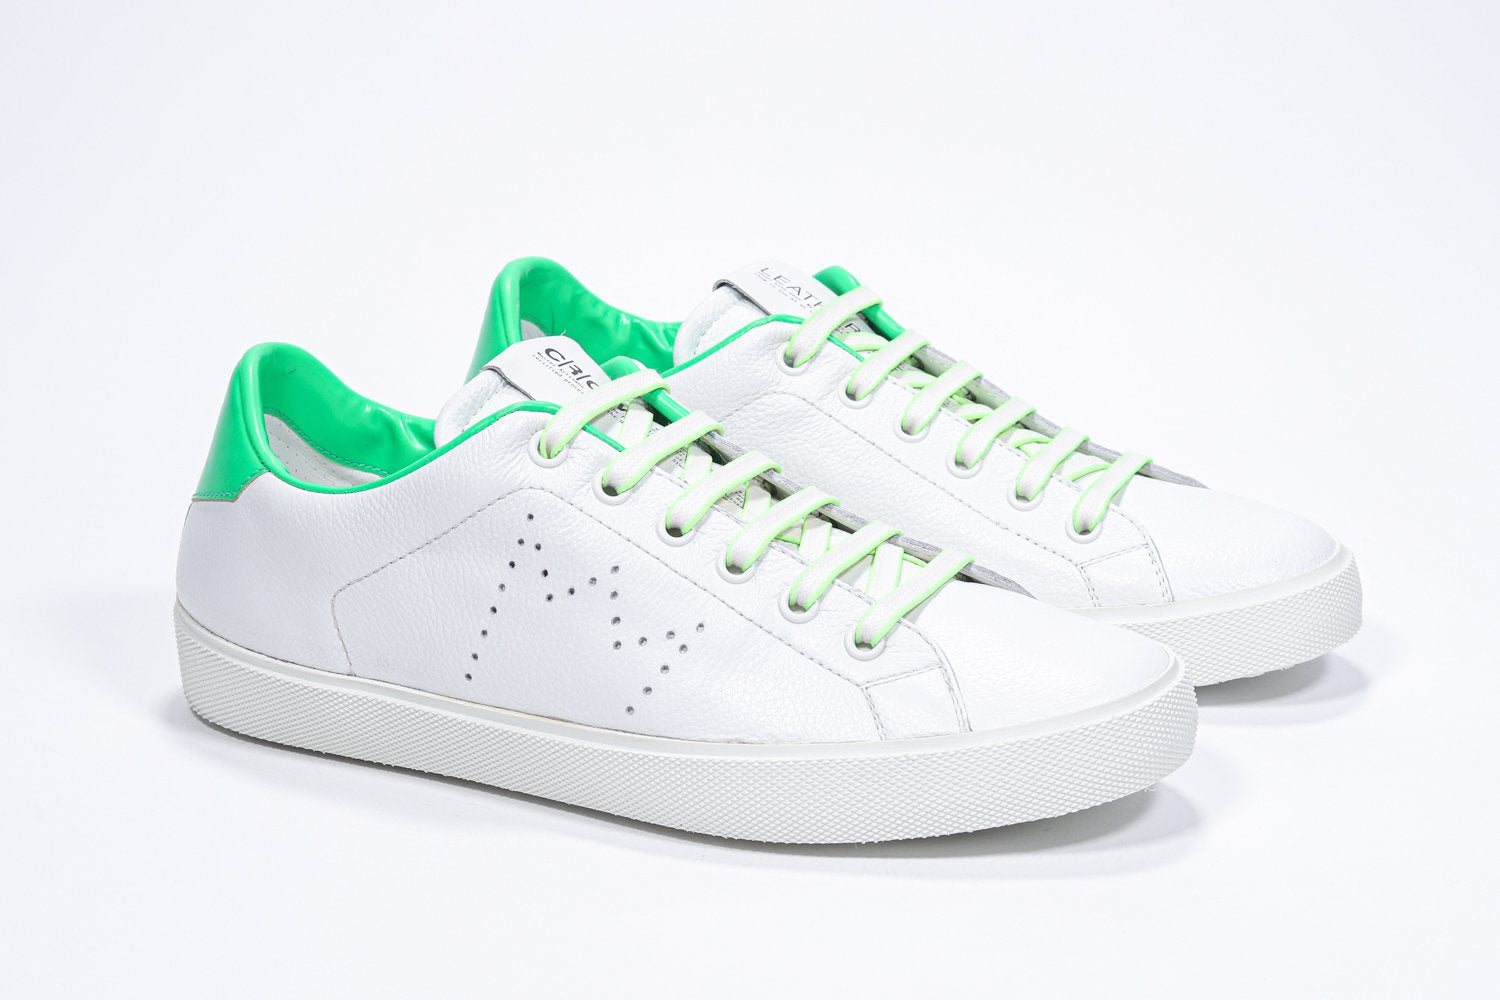 Vue de trois quarts avant de la chaussure basse blanche sneaker avec des détails vert fluo et le logo perforé de la couronne sur la tige. Tige en cuir et semelle en caoutchouc blanc.